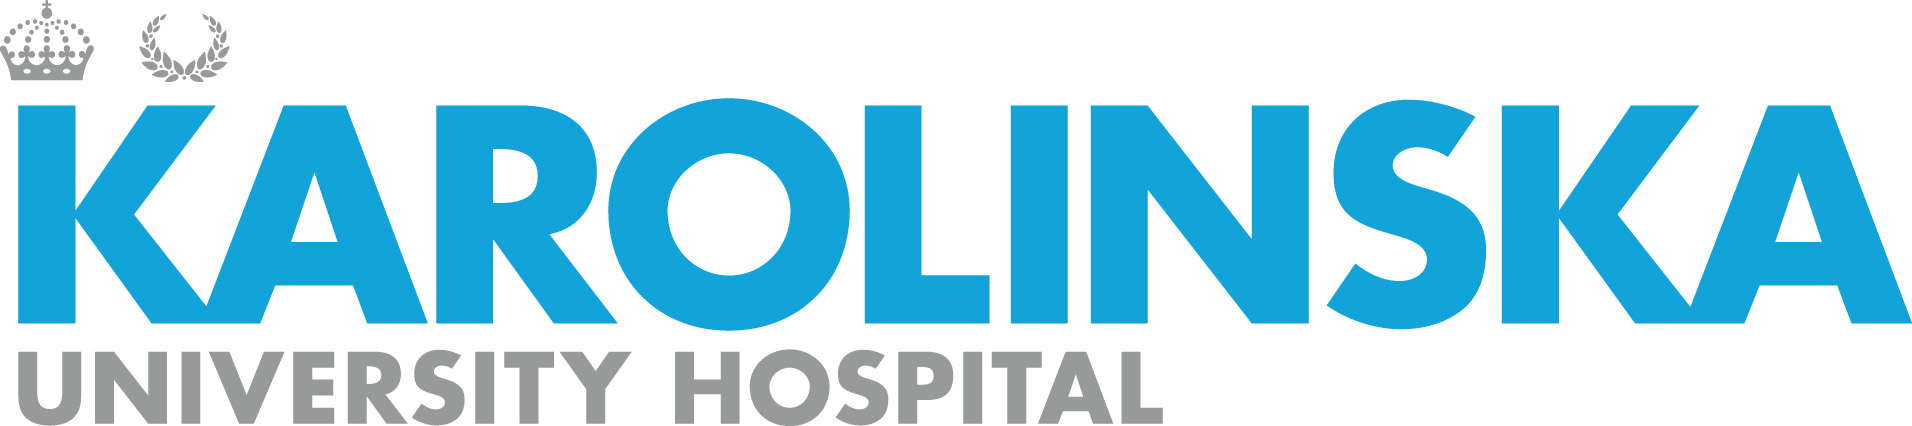 Karolinska University Hospital logotype